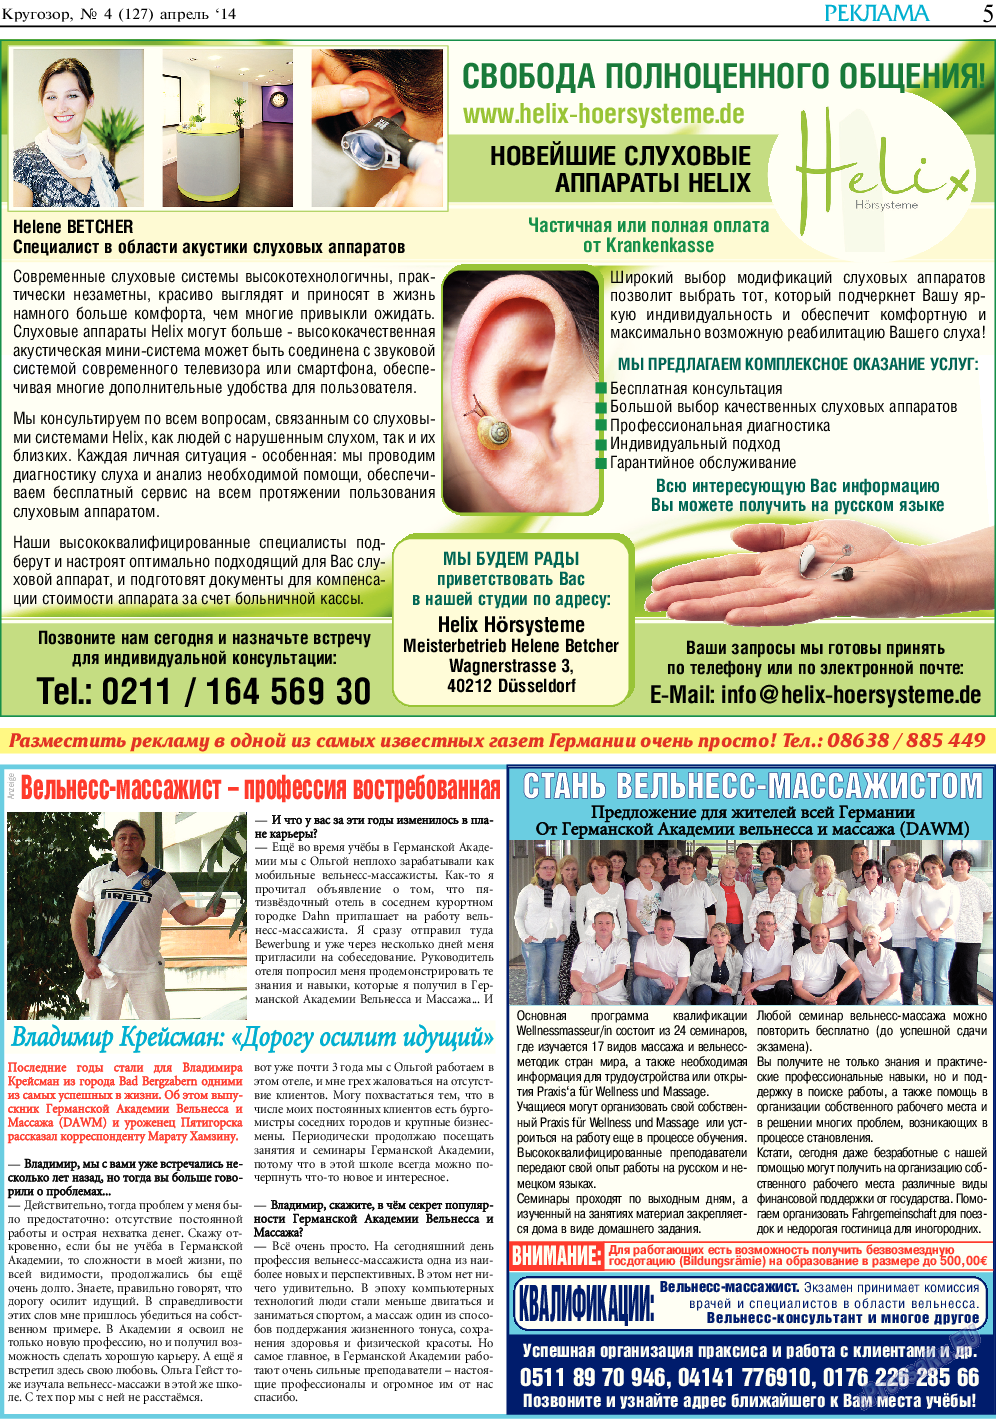 Кругозор, газета. 2014 №4 стр.5